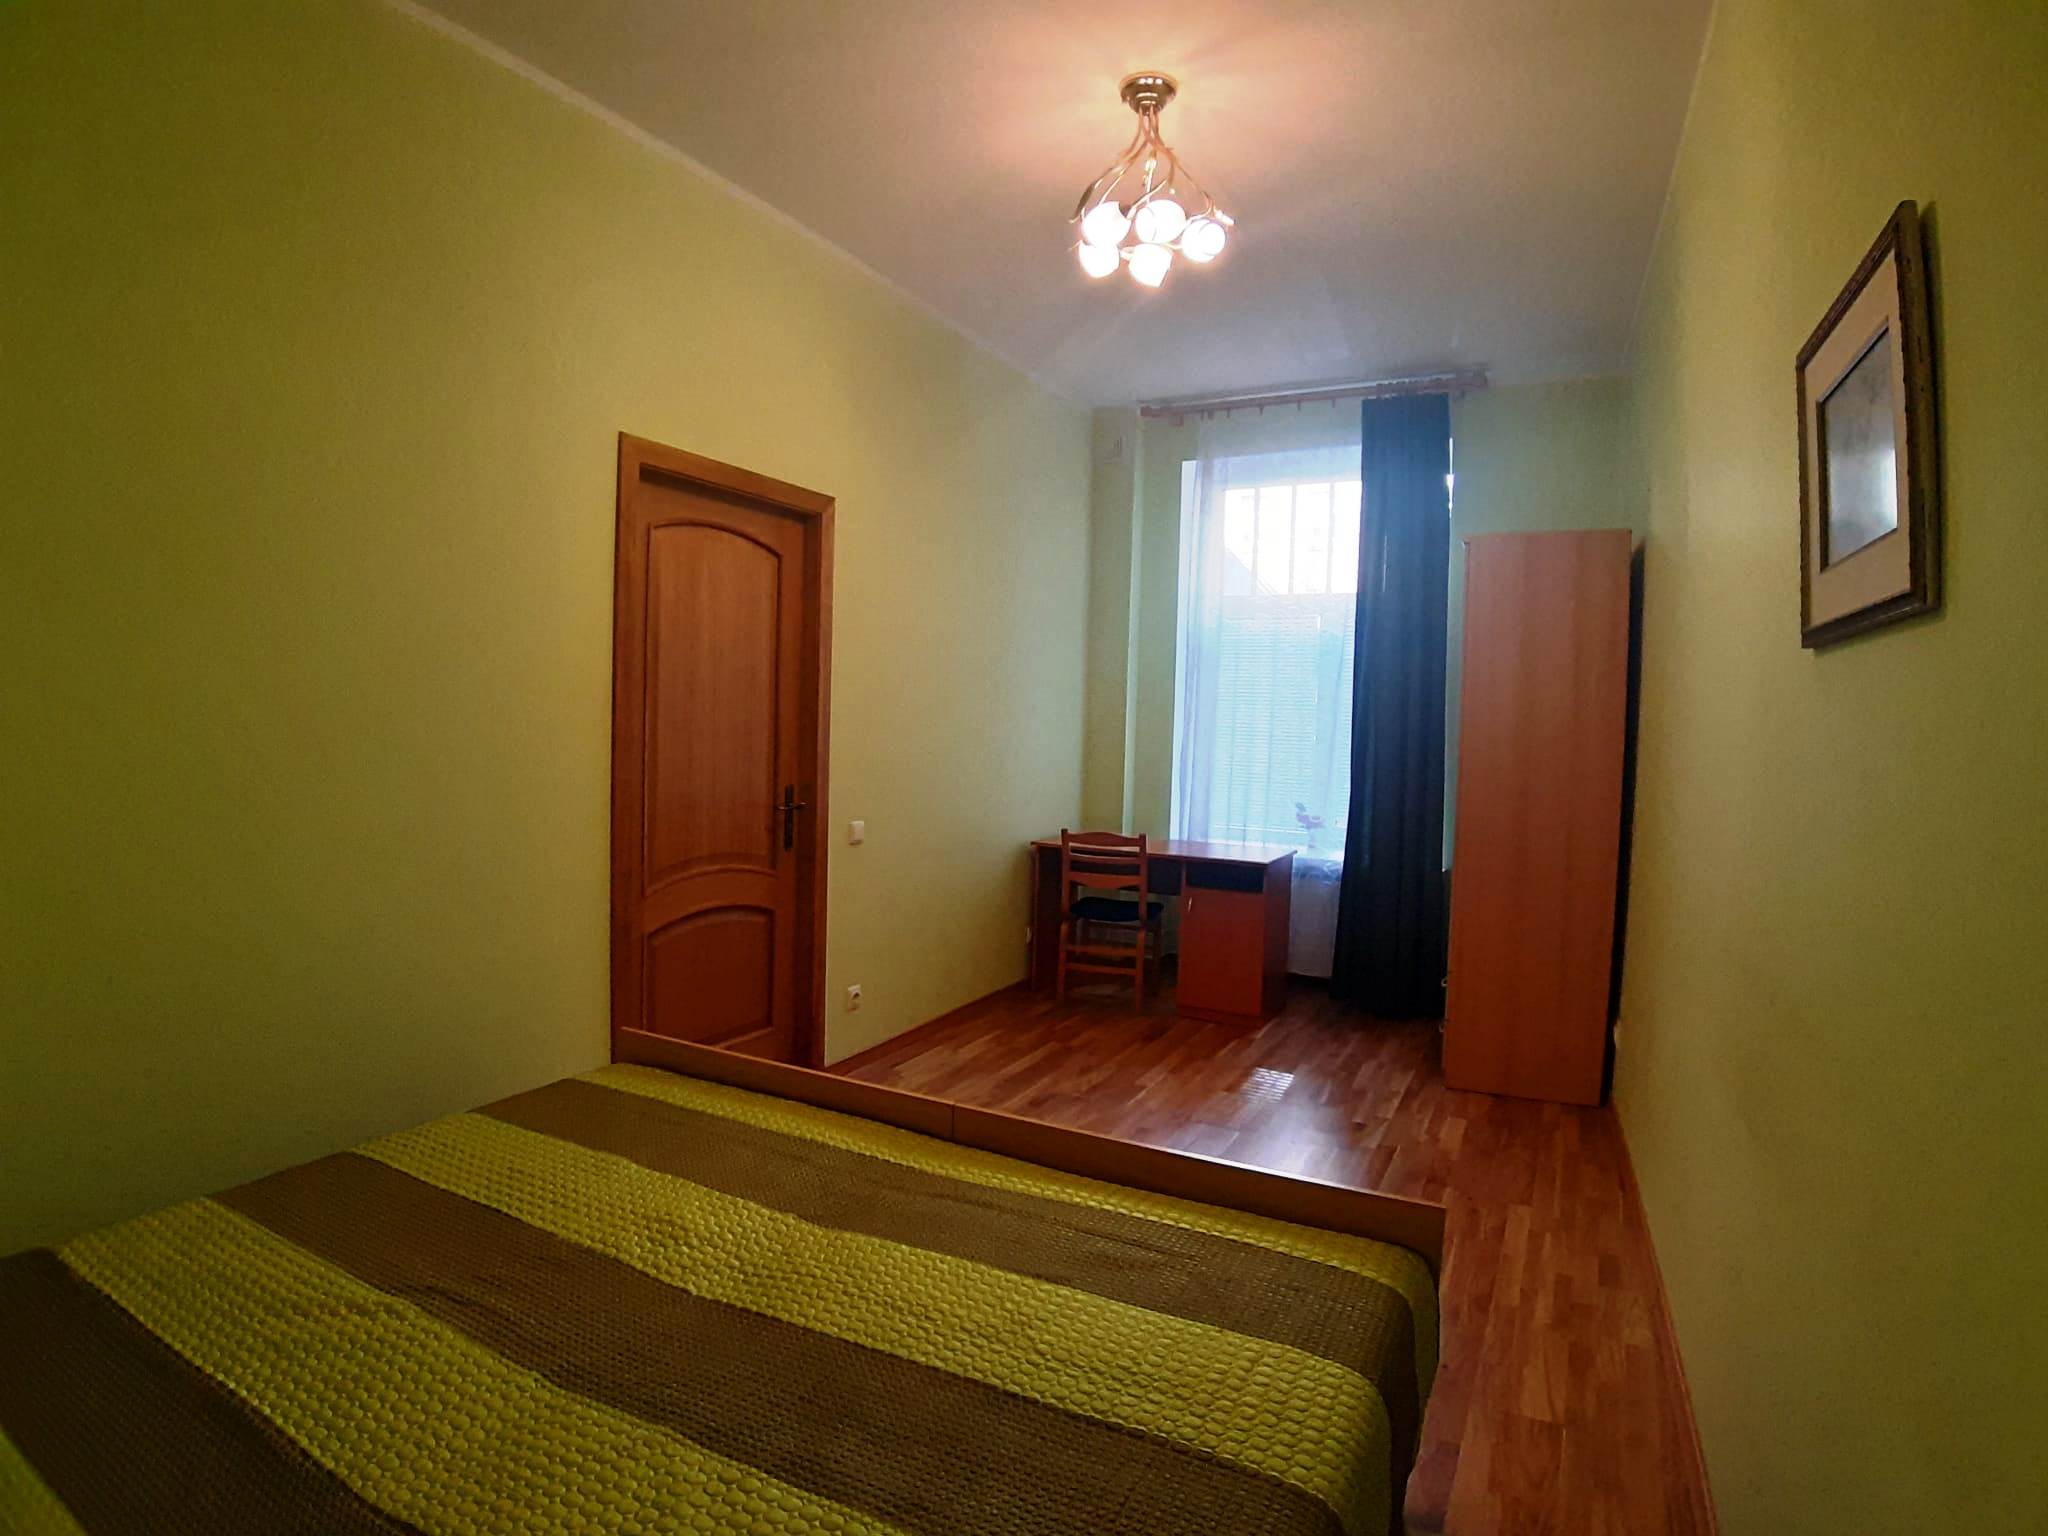 Apartment for rent, Čaka street 68 - Image 1